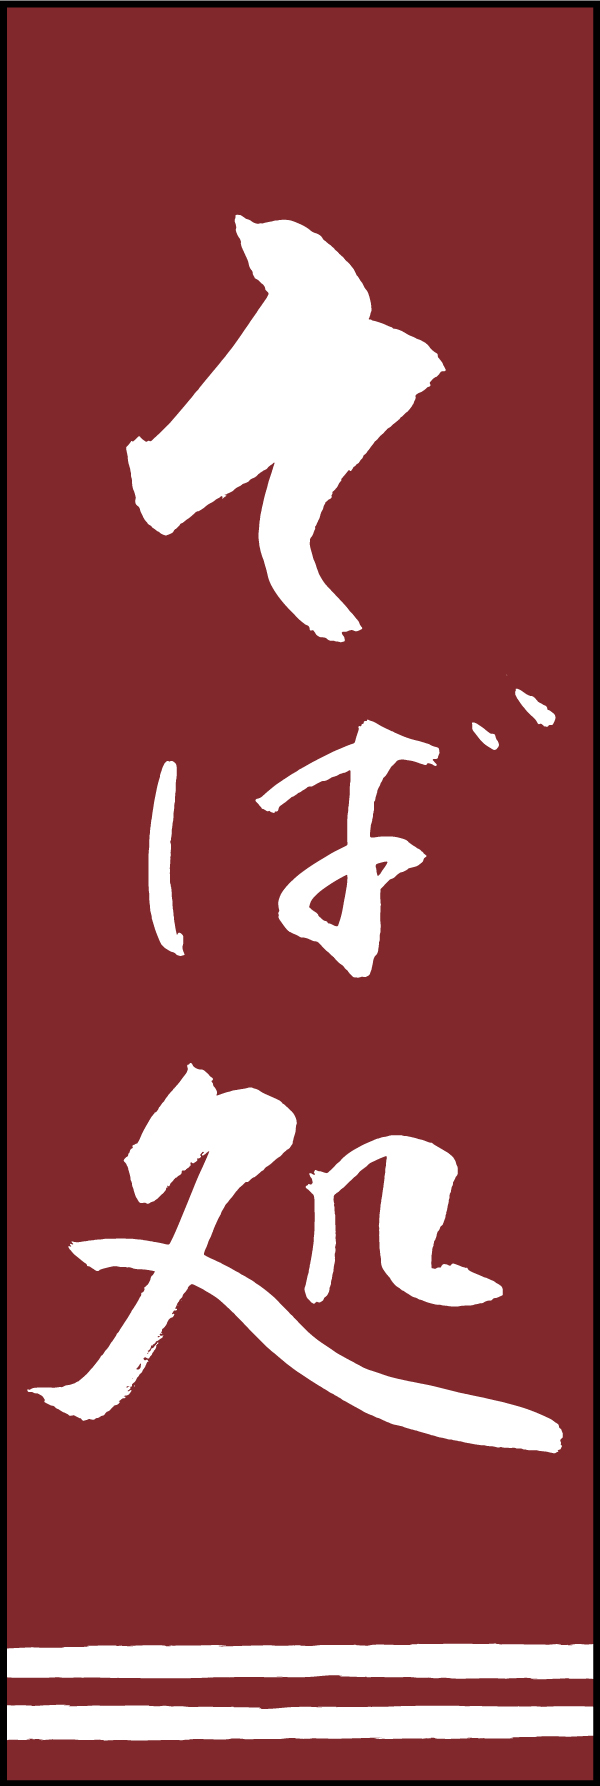 そば処 192_03 「そば処」ののぼりです。江戸文字職人 加藤木大介氏による、手書きの筆文字です。完全書き下ろし、唯一無二ののぼりは当店だけのオリジナル商品です。（T.M）